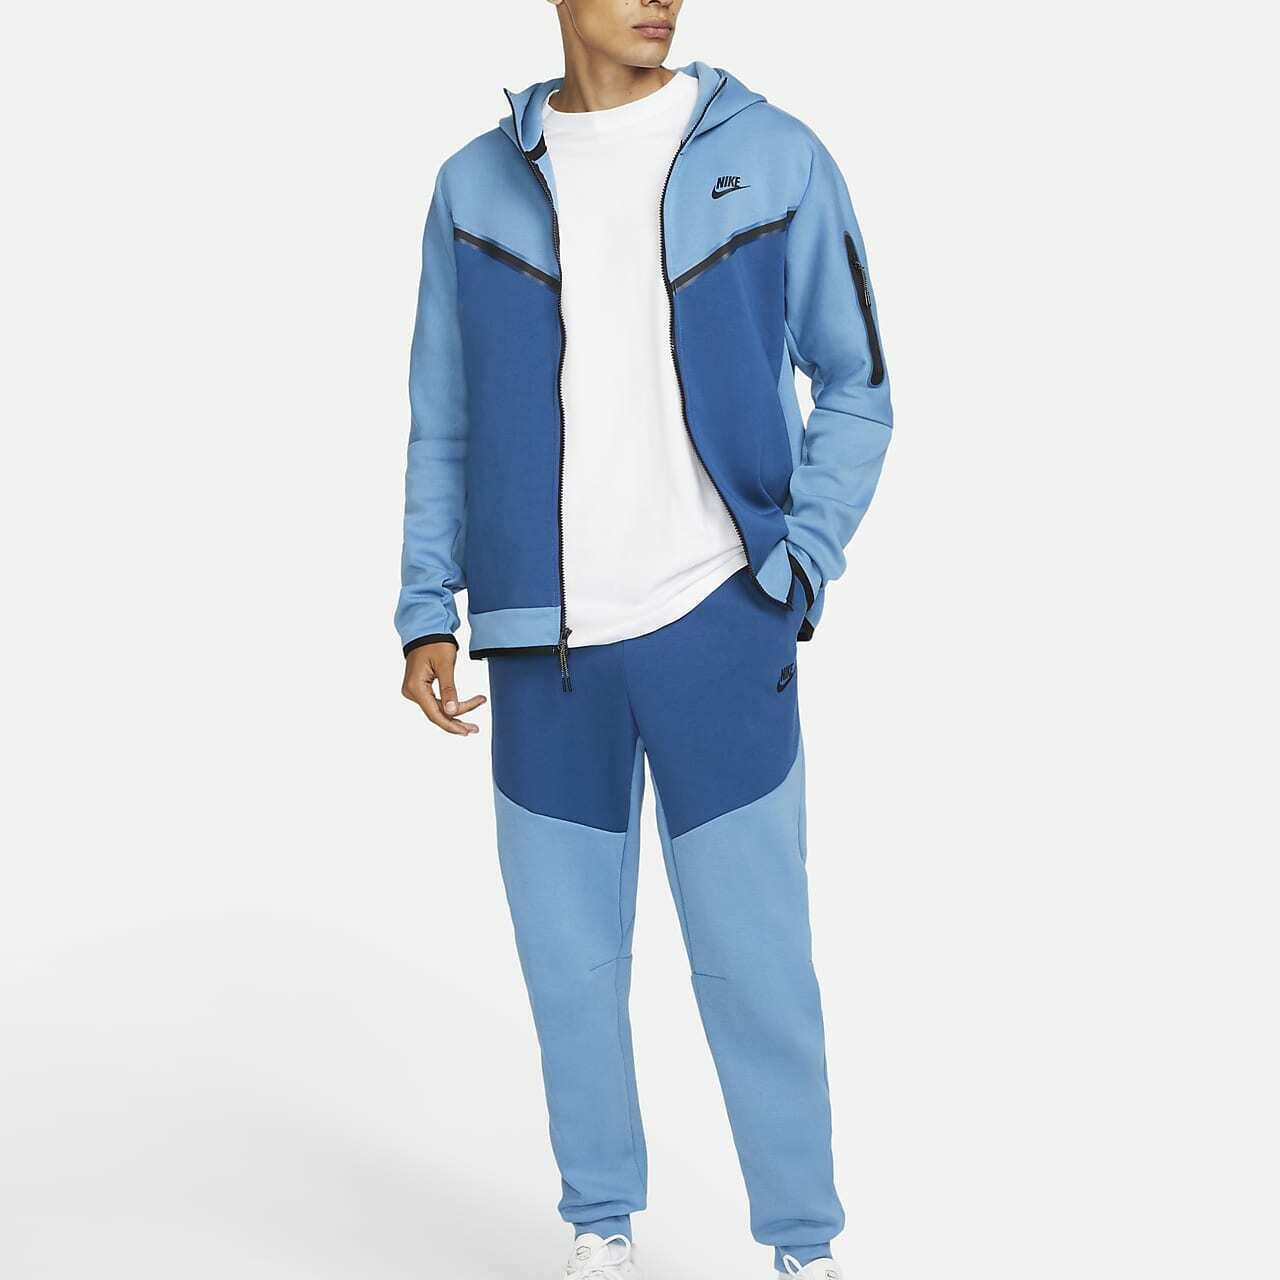 Nike tech fleece FULL SET - Dutch Blue 🥶 Size... - Depop